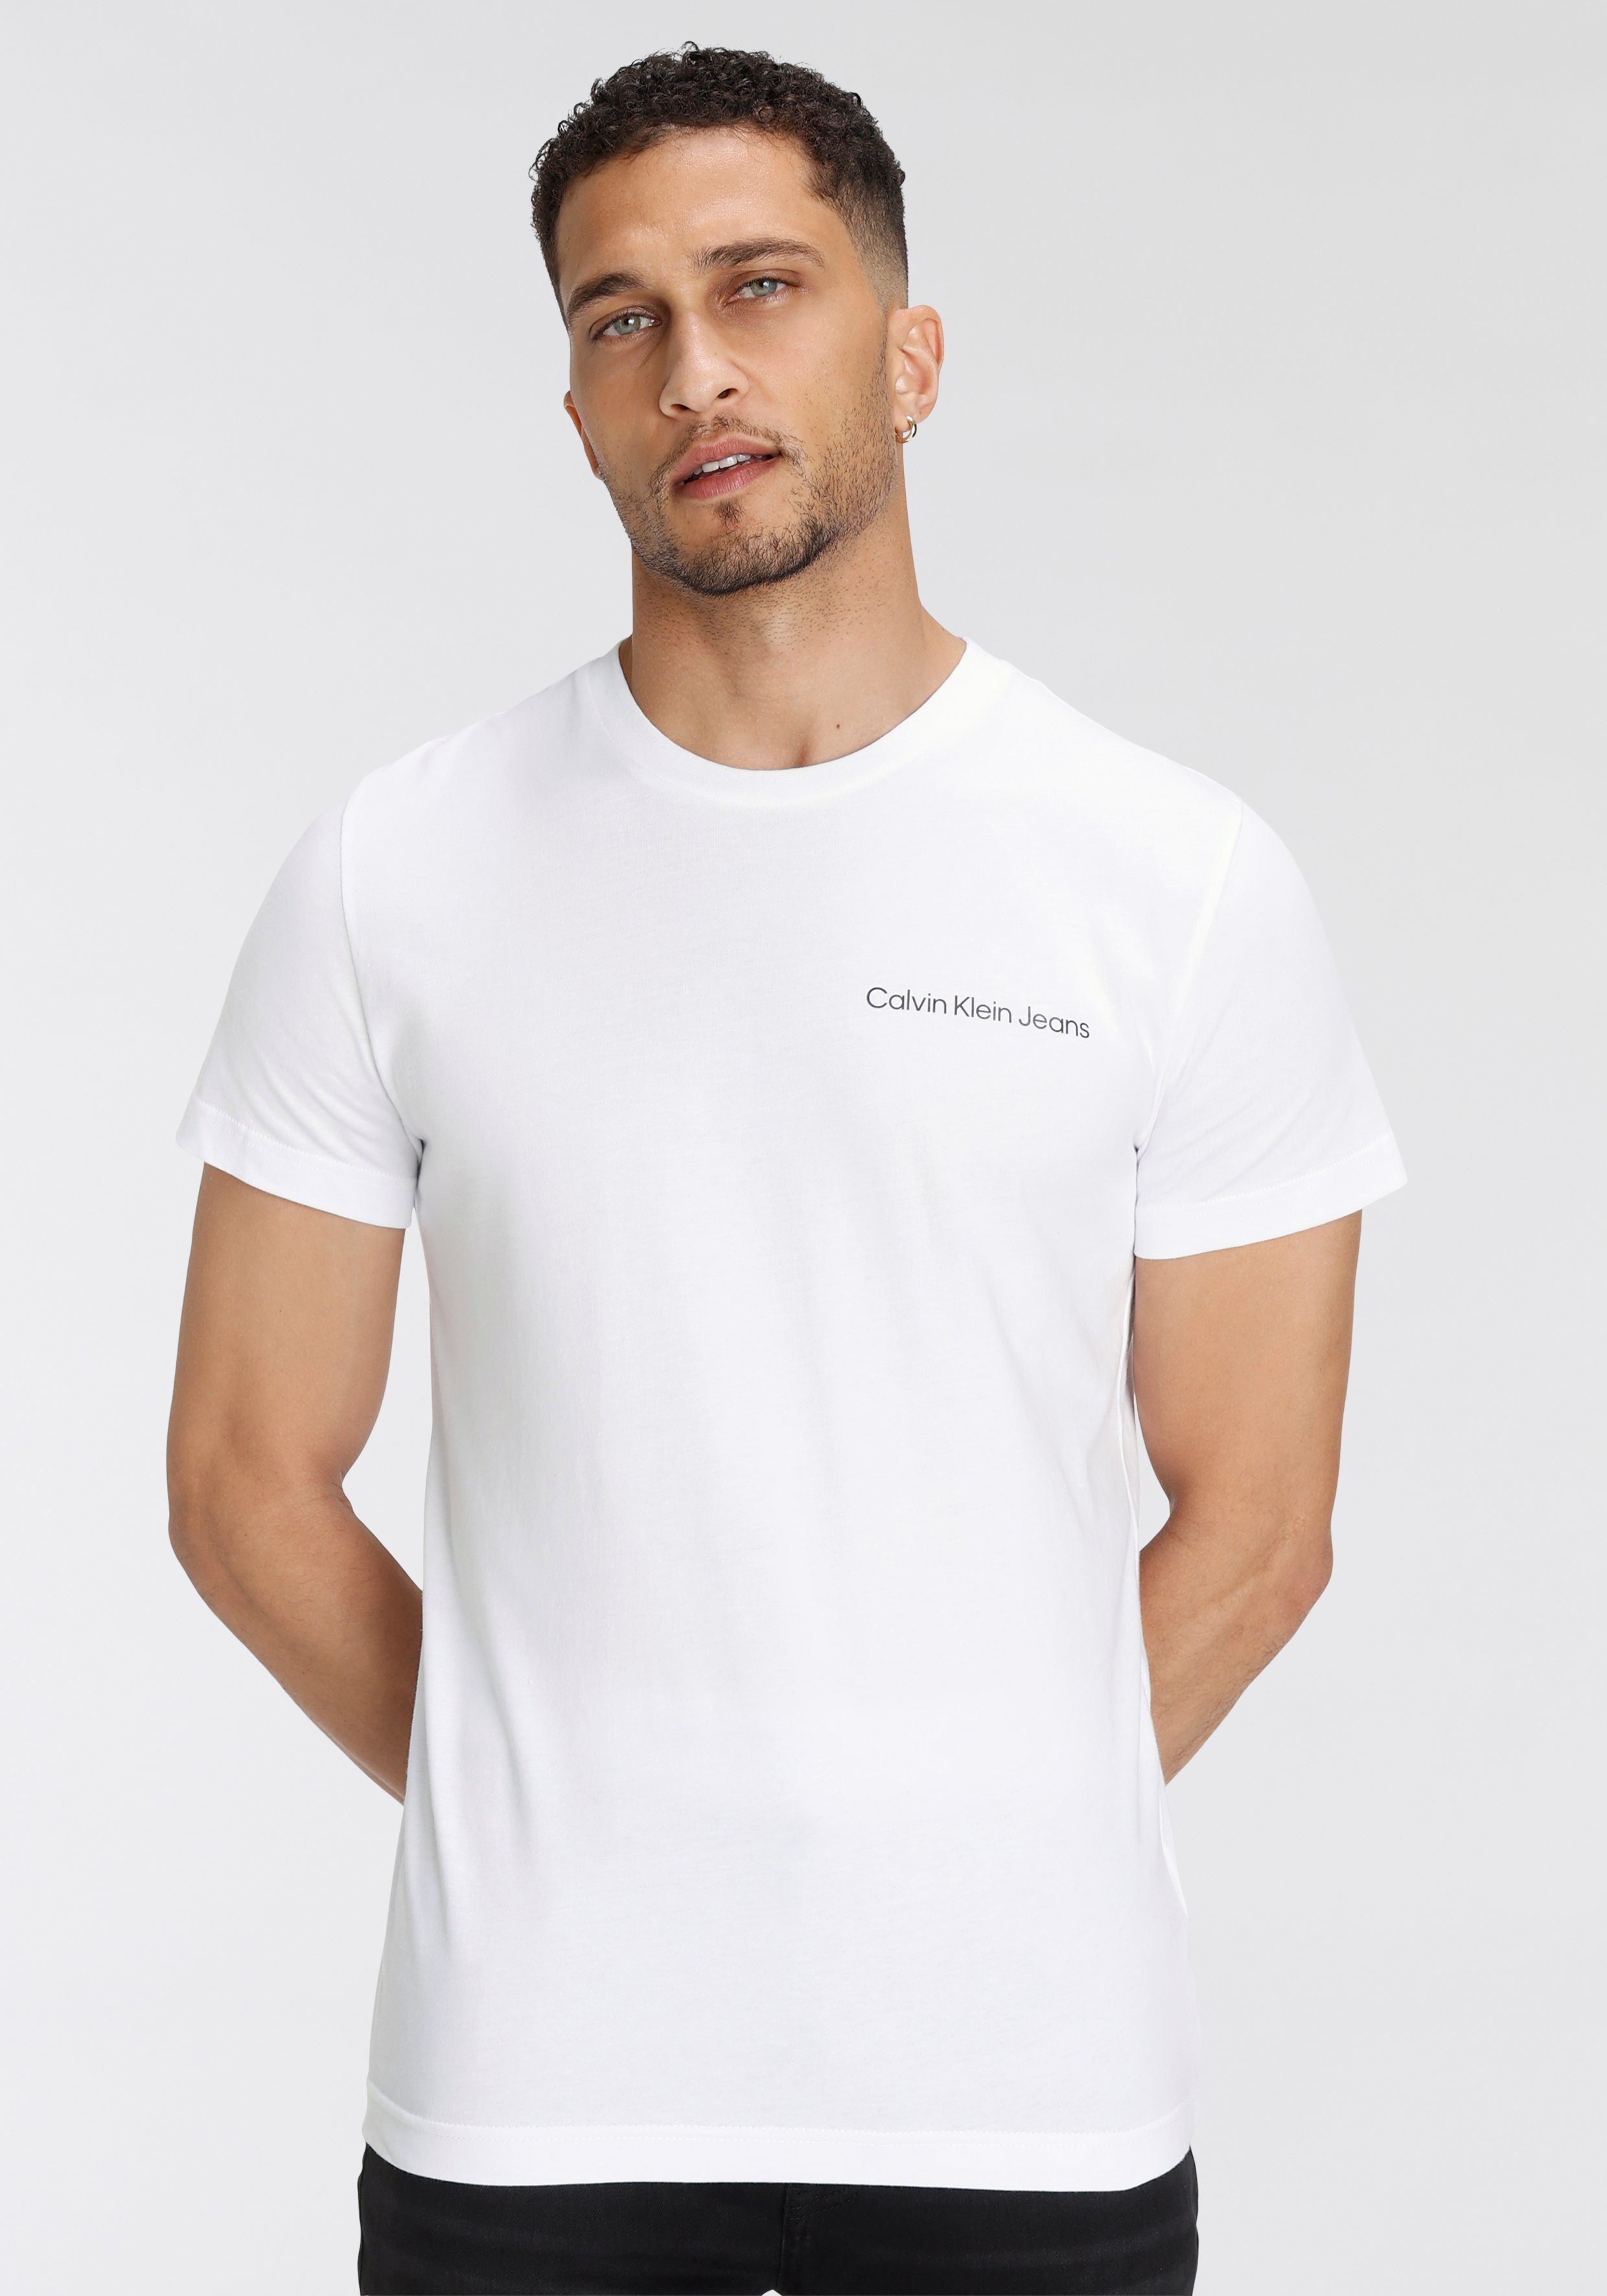 Shoppen Sie die neuesten Artikel! Calvin Klein White TEE SLIM INSTITUTIONAL T-Shirt Jeans Bright CHEST